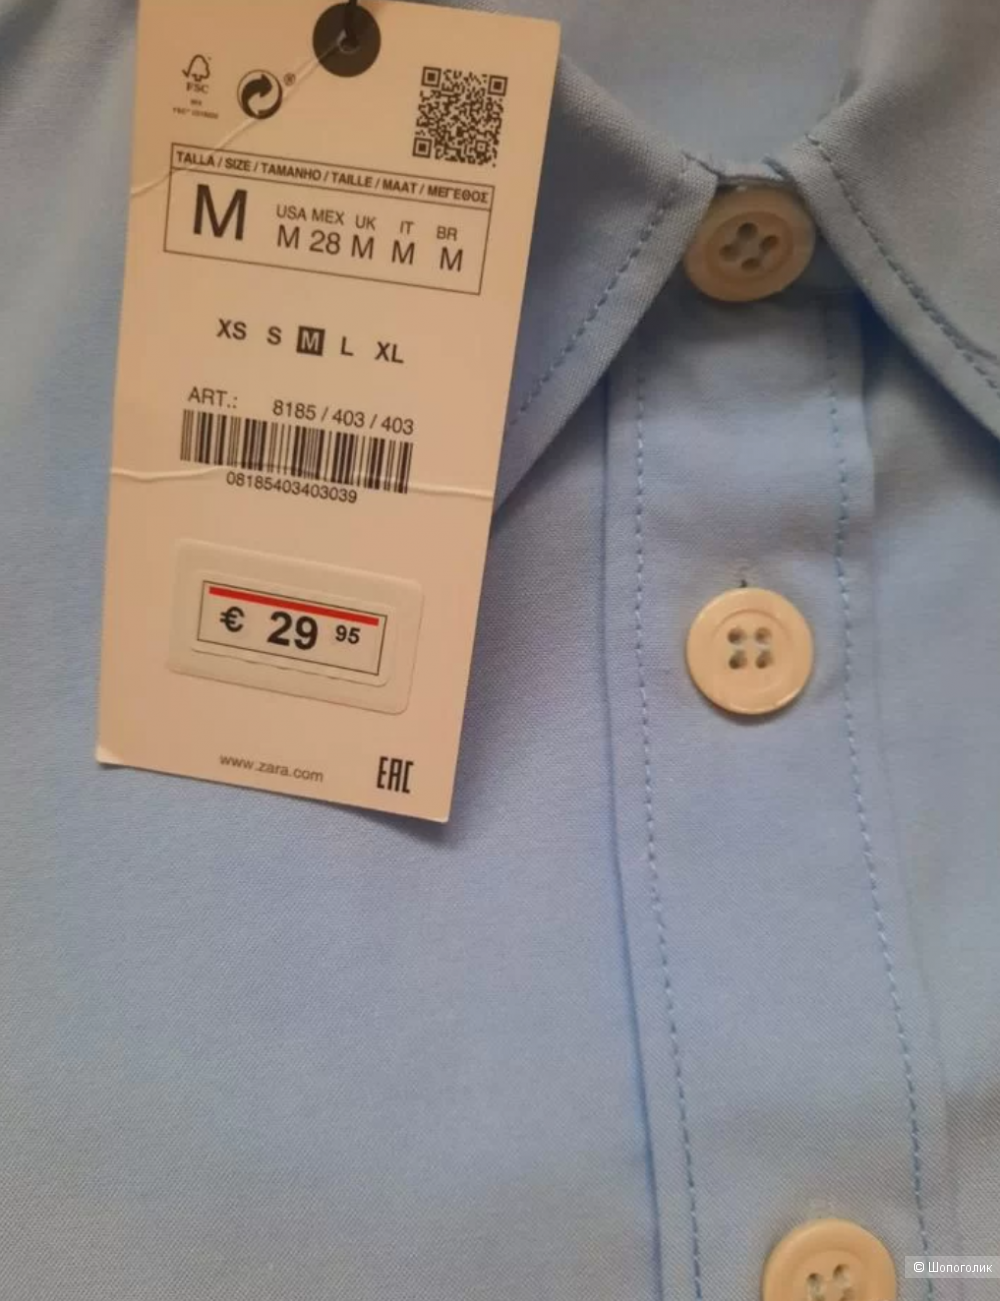 Рубашка Zara, размер M